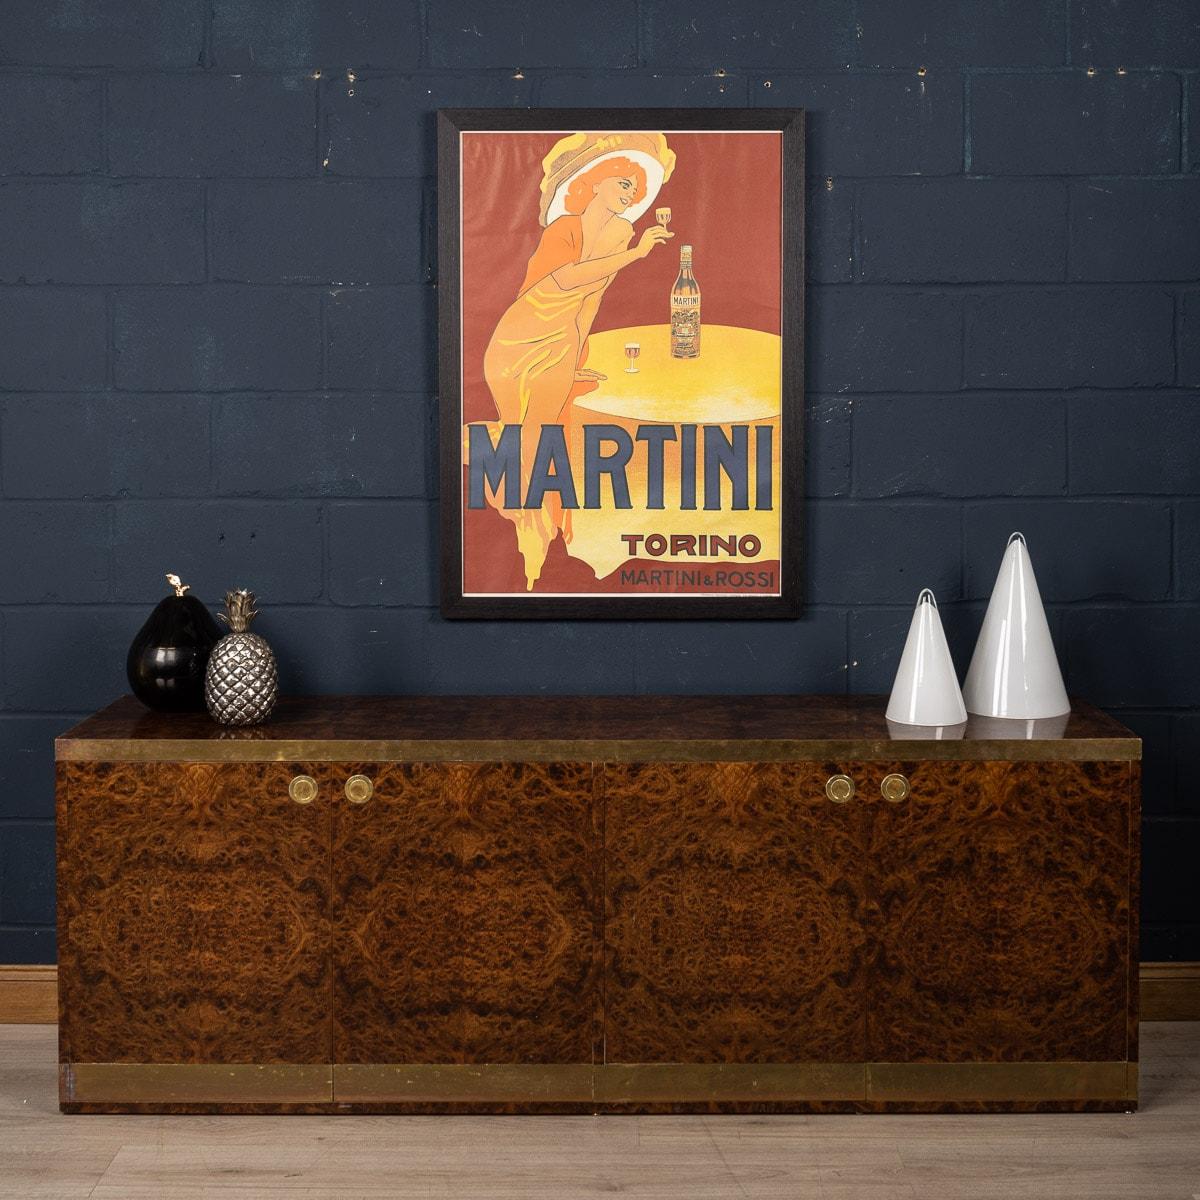 Italian Framed Advertising Poster for Martini, Italy, c.1970